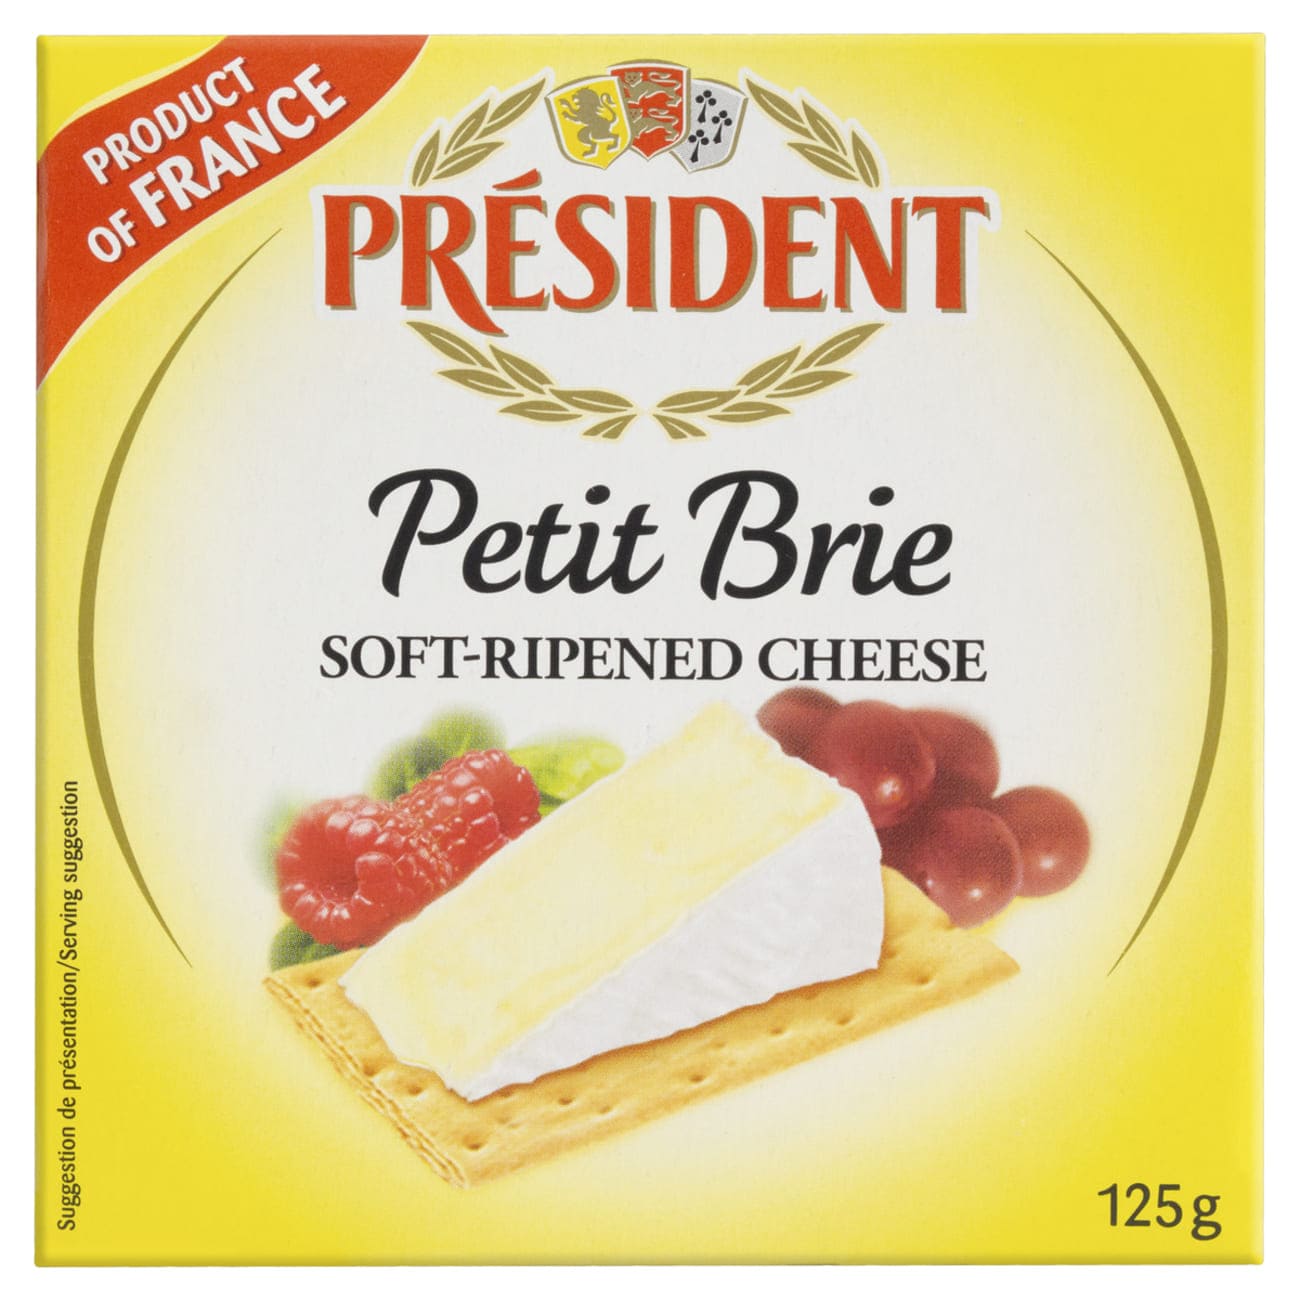 Queijo Petit Brie Prsident 125g